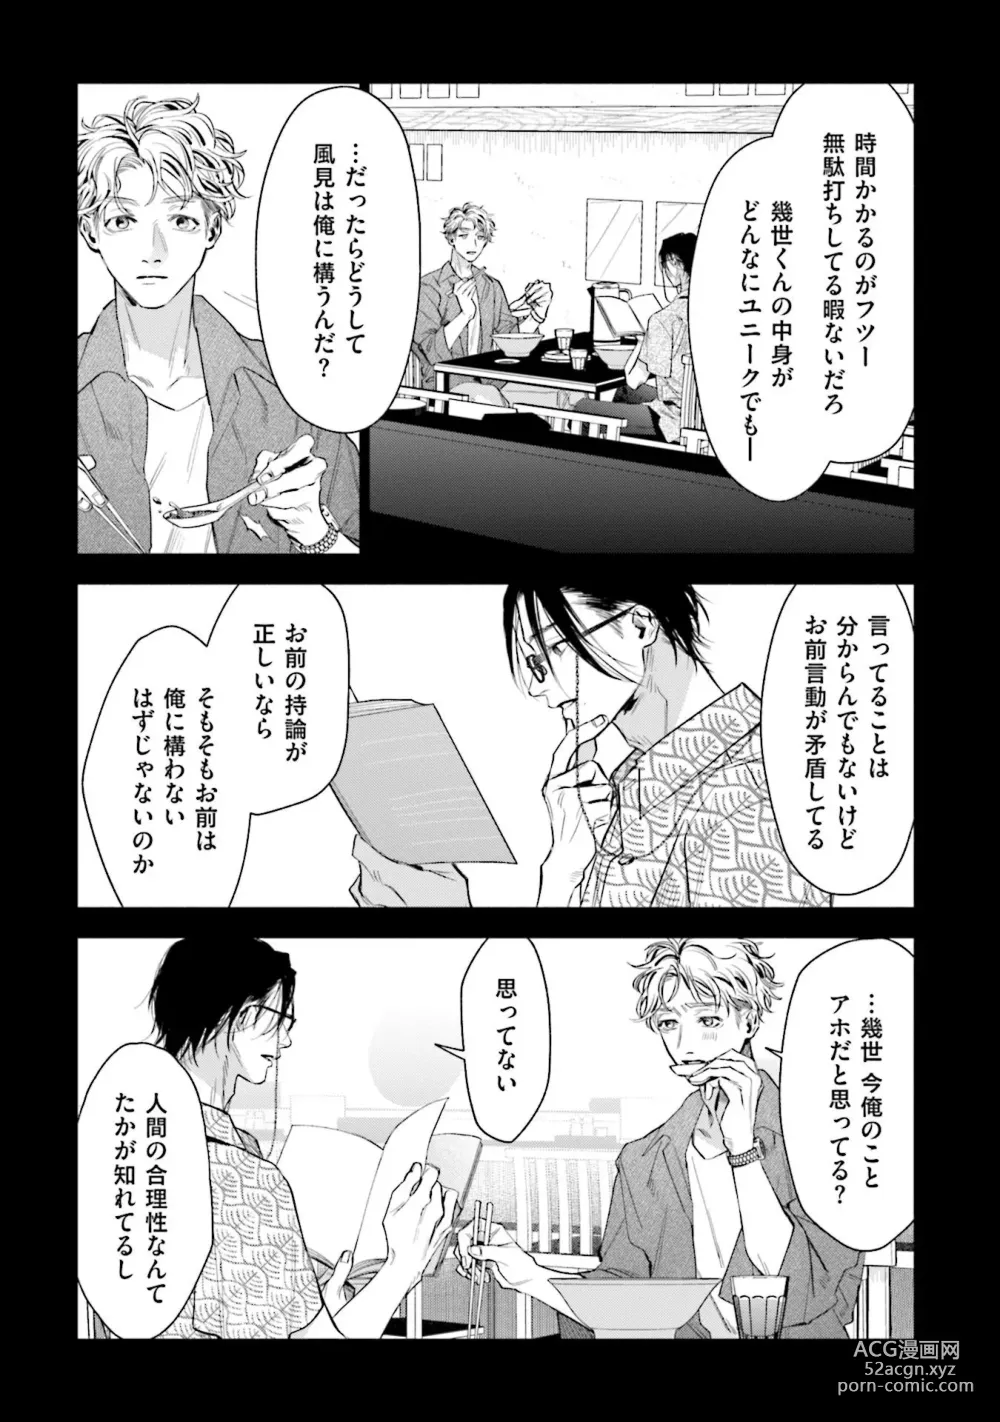 Page 9 of manga Hitoriyogari no Vanilla